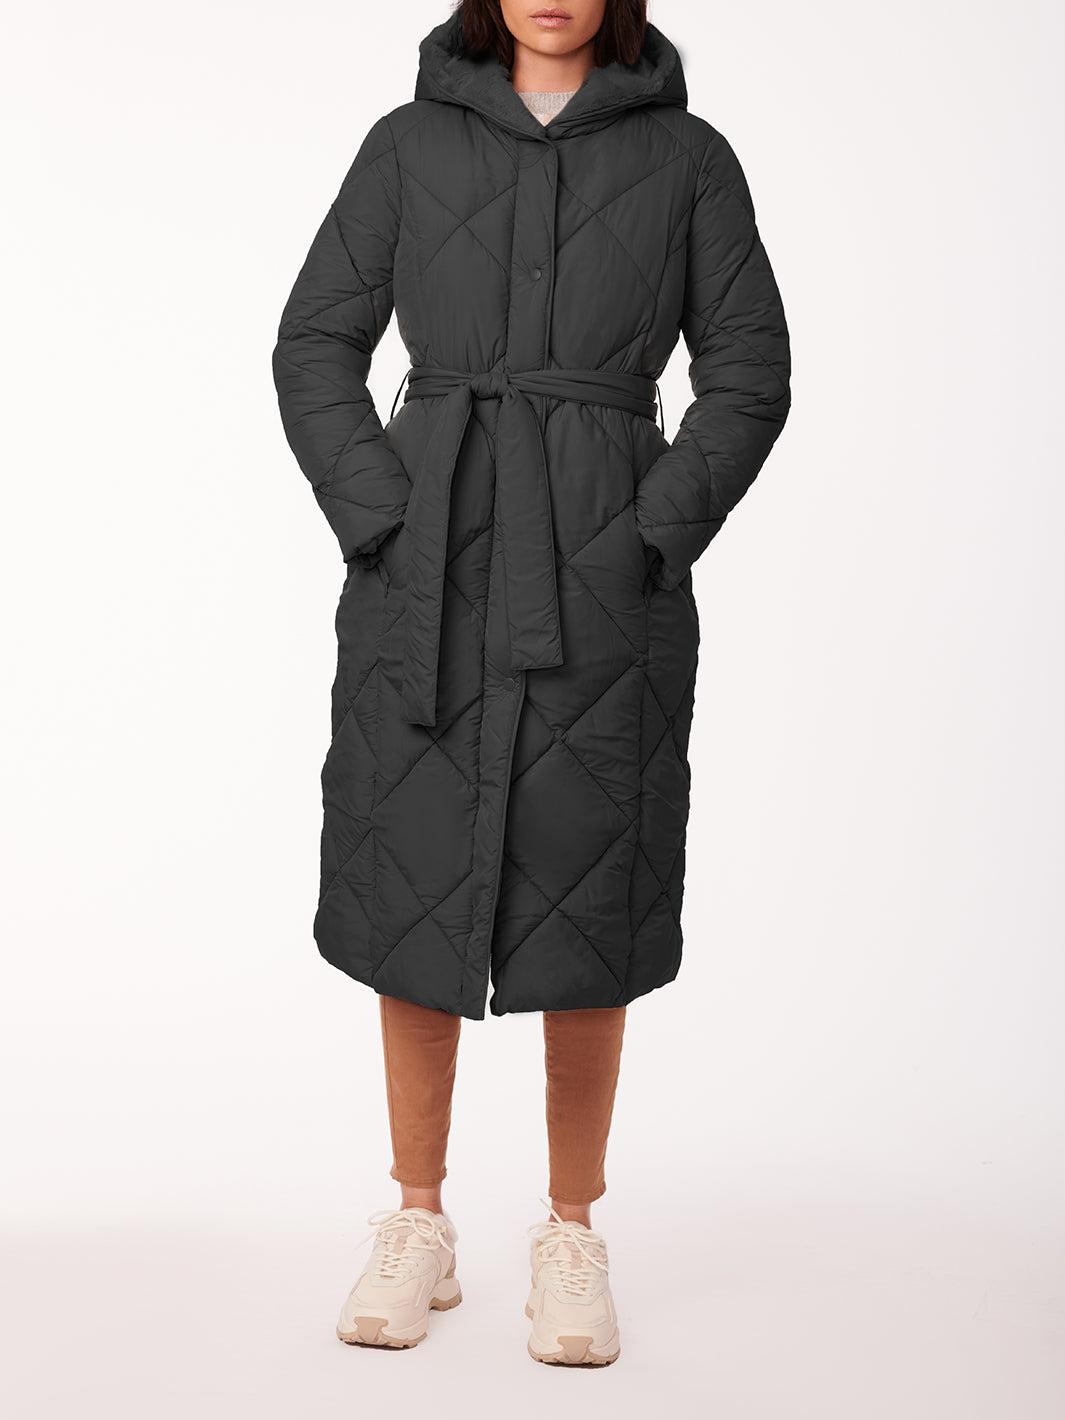 Bernardo Long Fur Lined Puffer Jacket in Black | Lyst